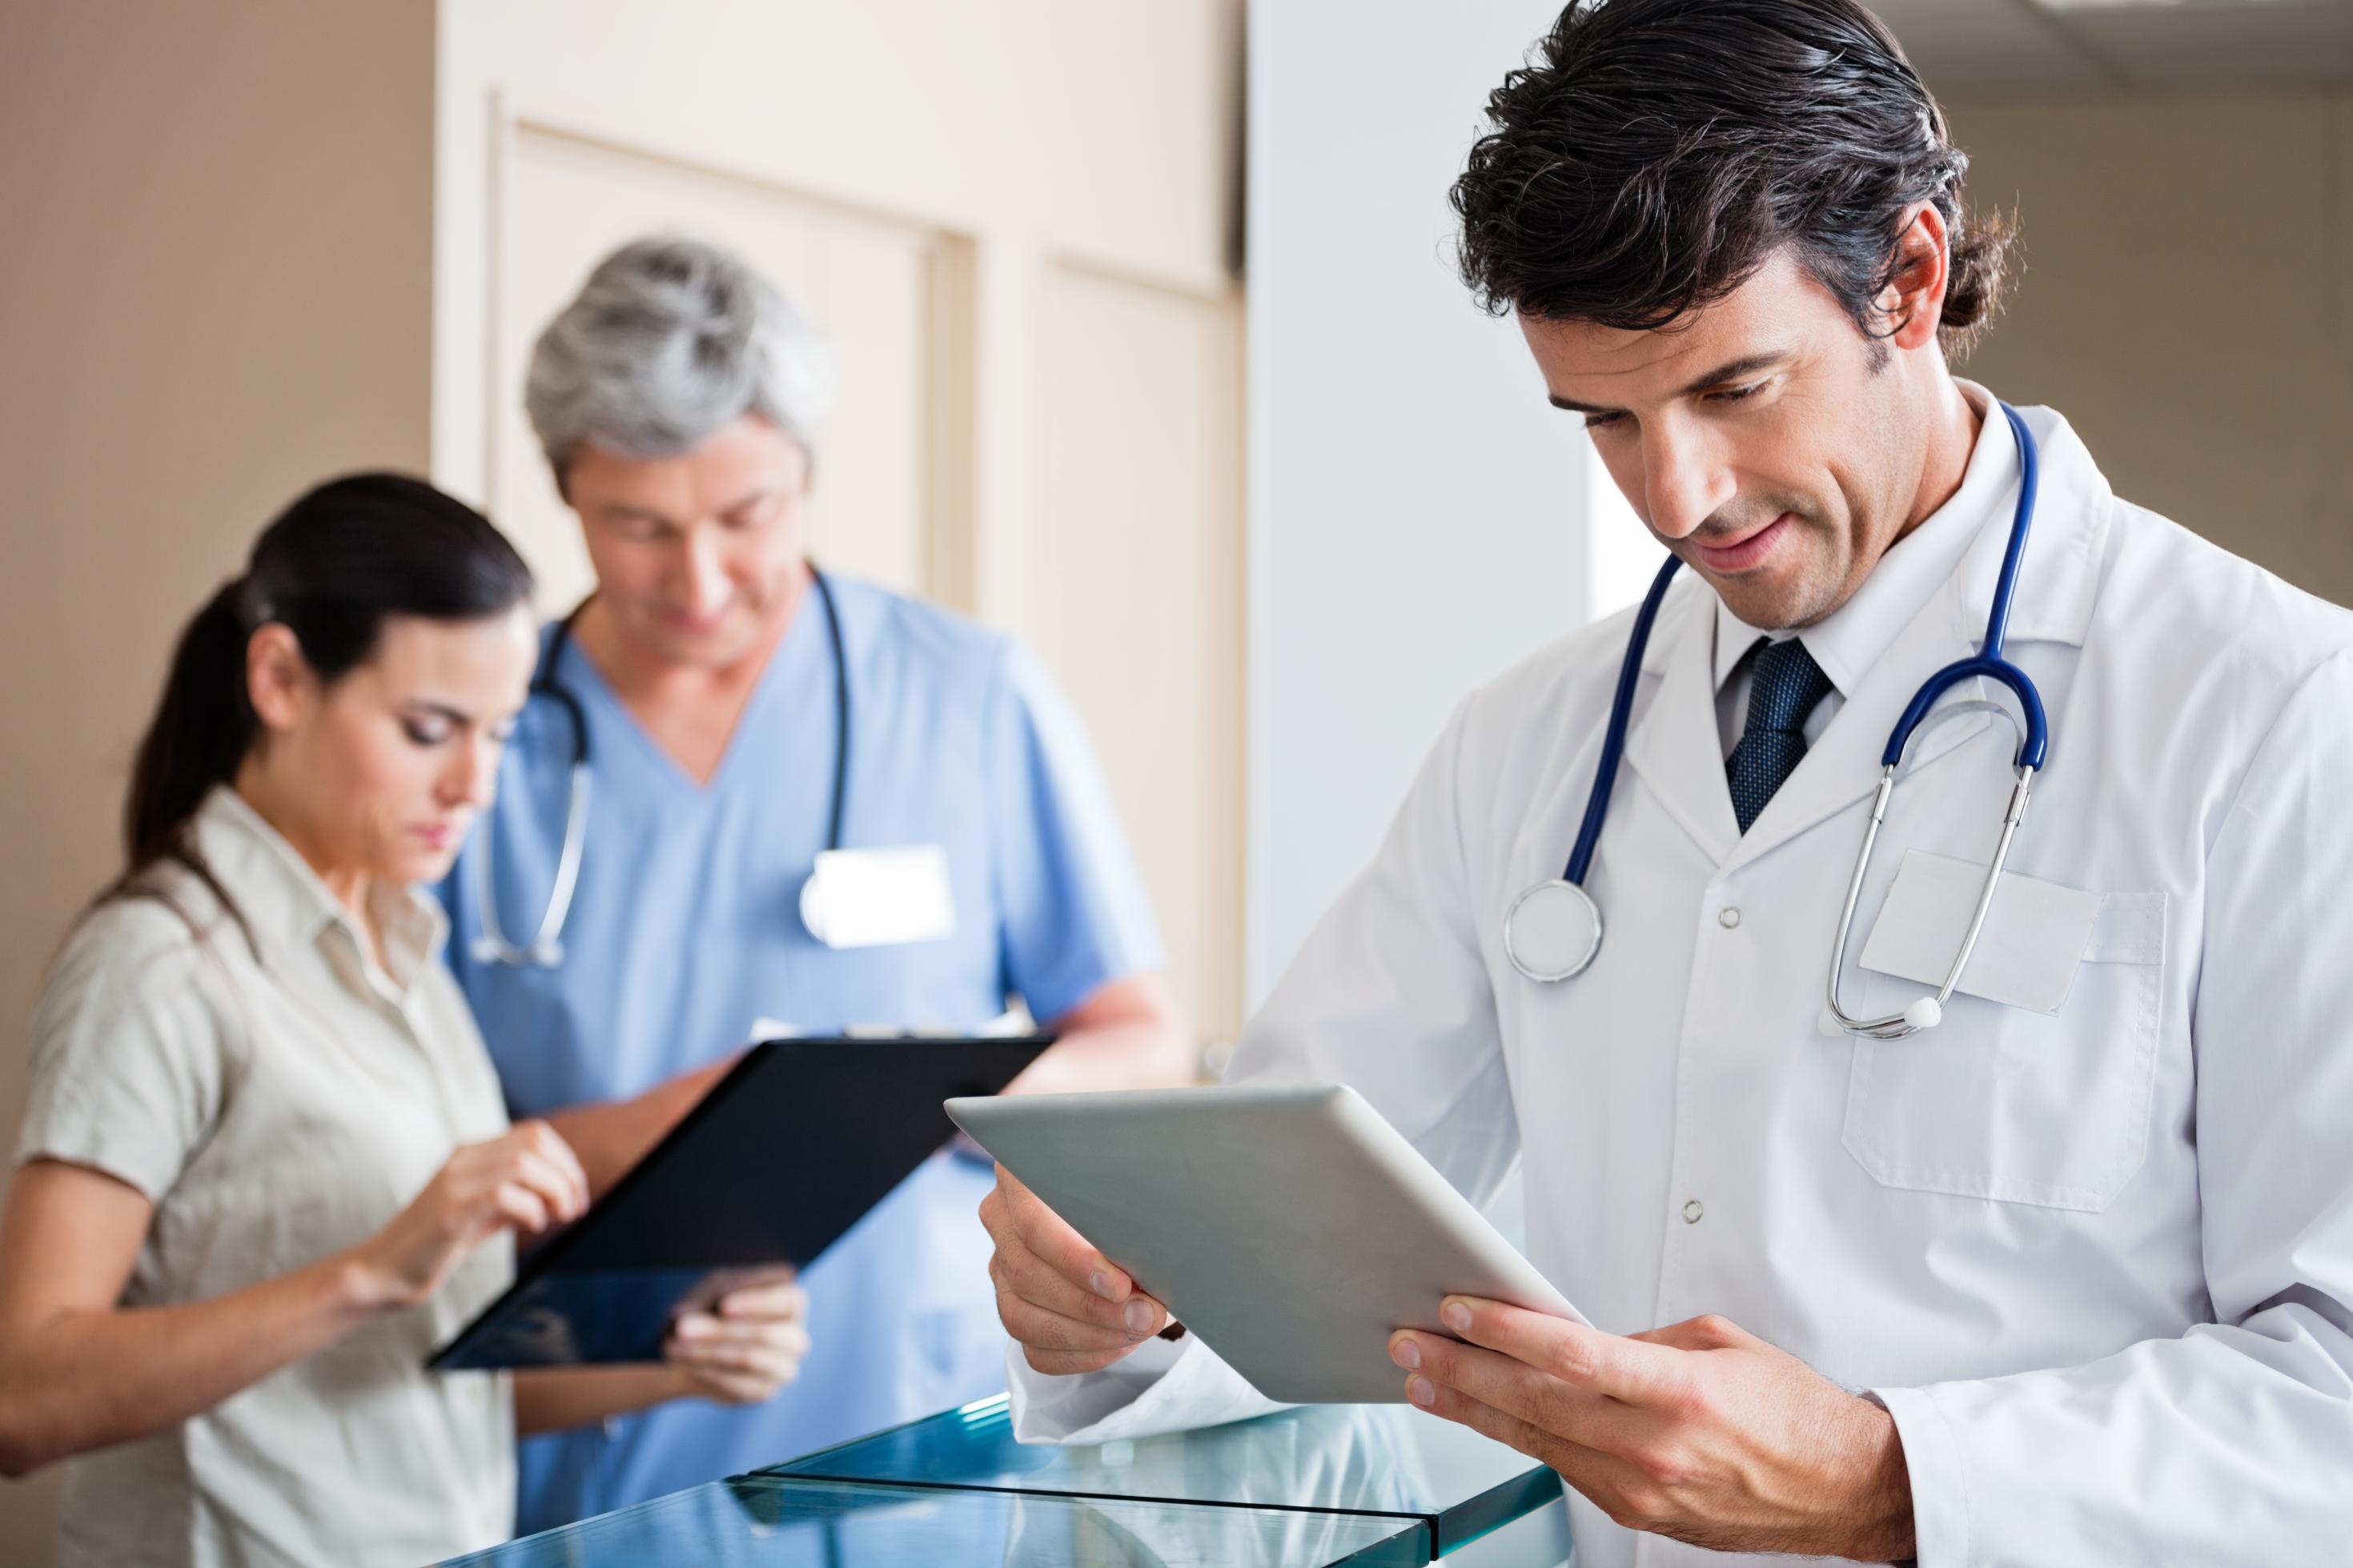 Ein Arzt steht in einer Praxis und schaut auf ein Tablet, im Hintergrund sind zwei weitere Gesundheitsfachkräfte zu sehen.